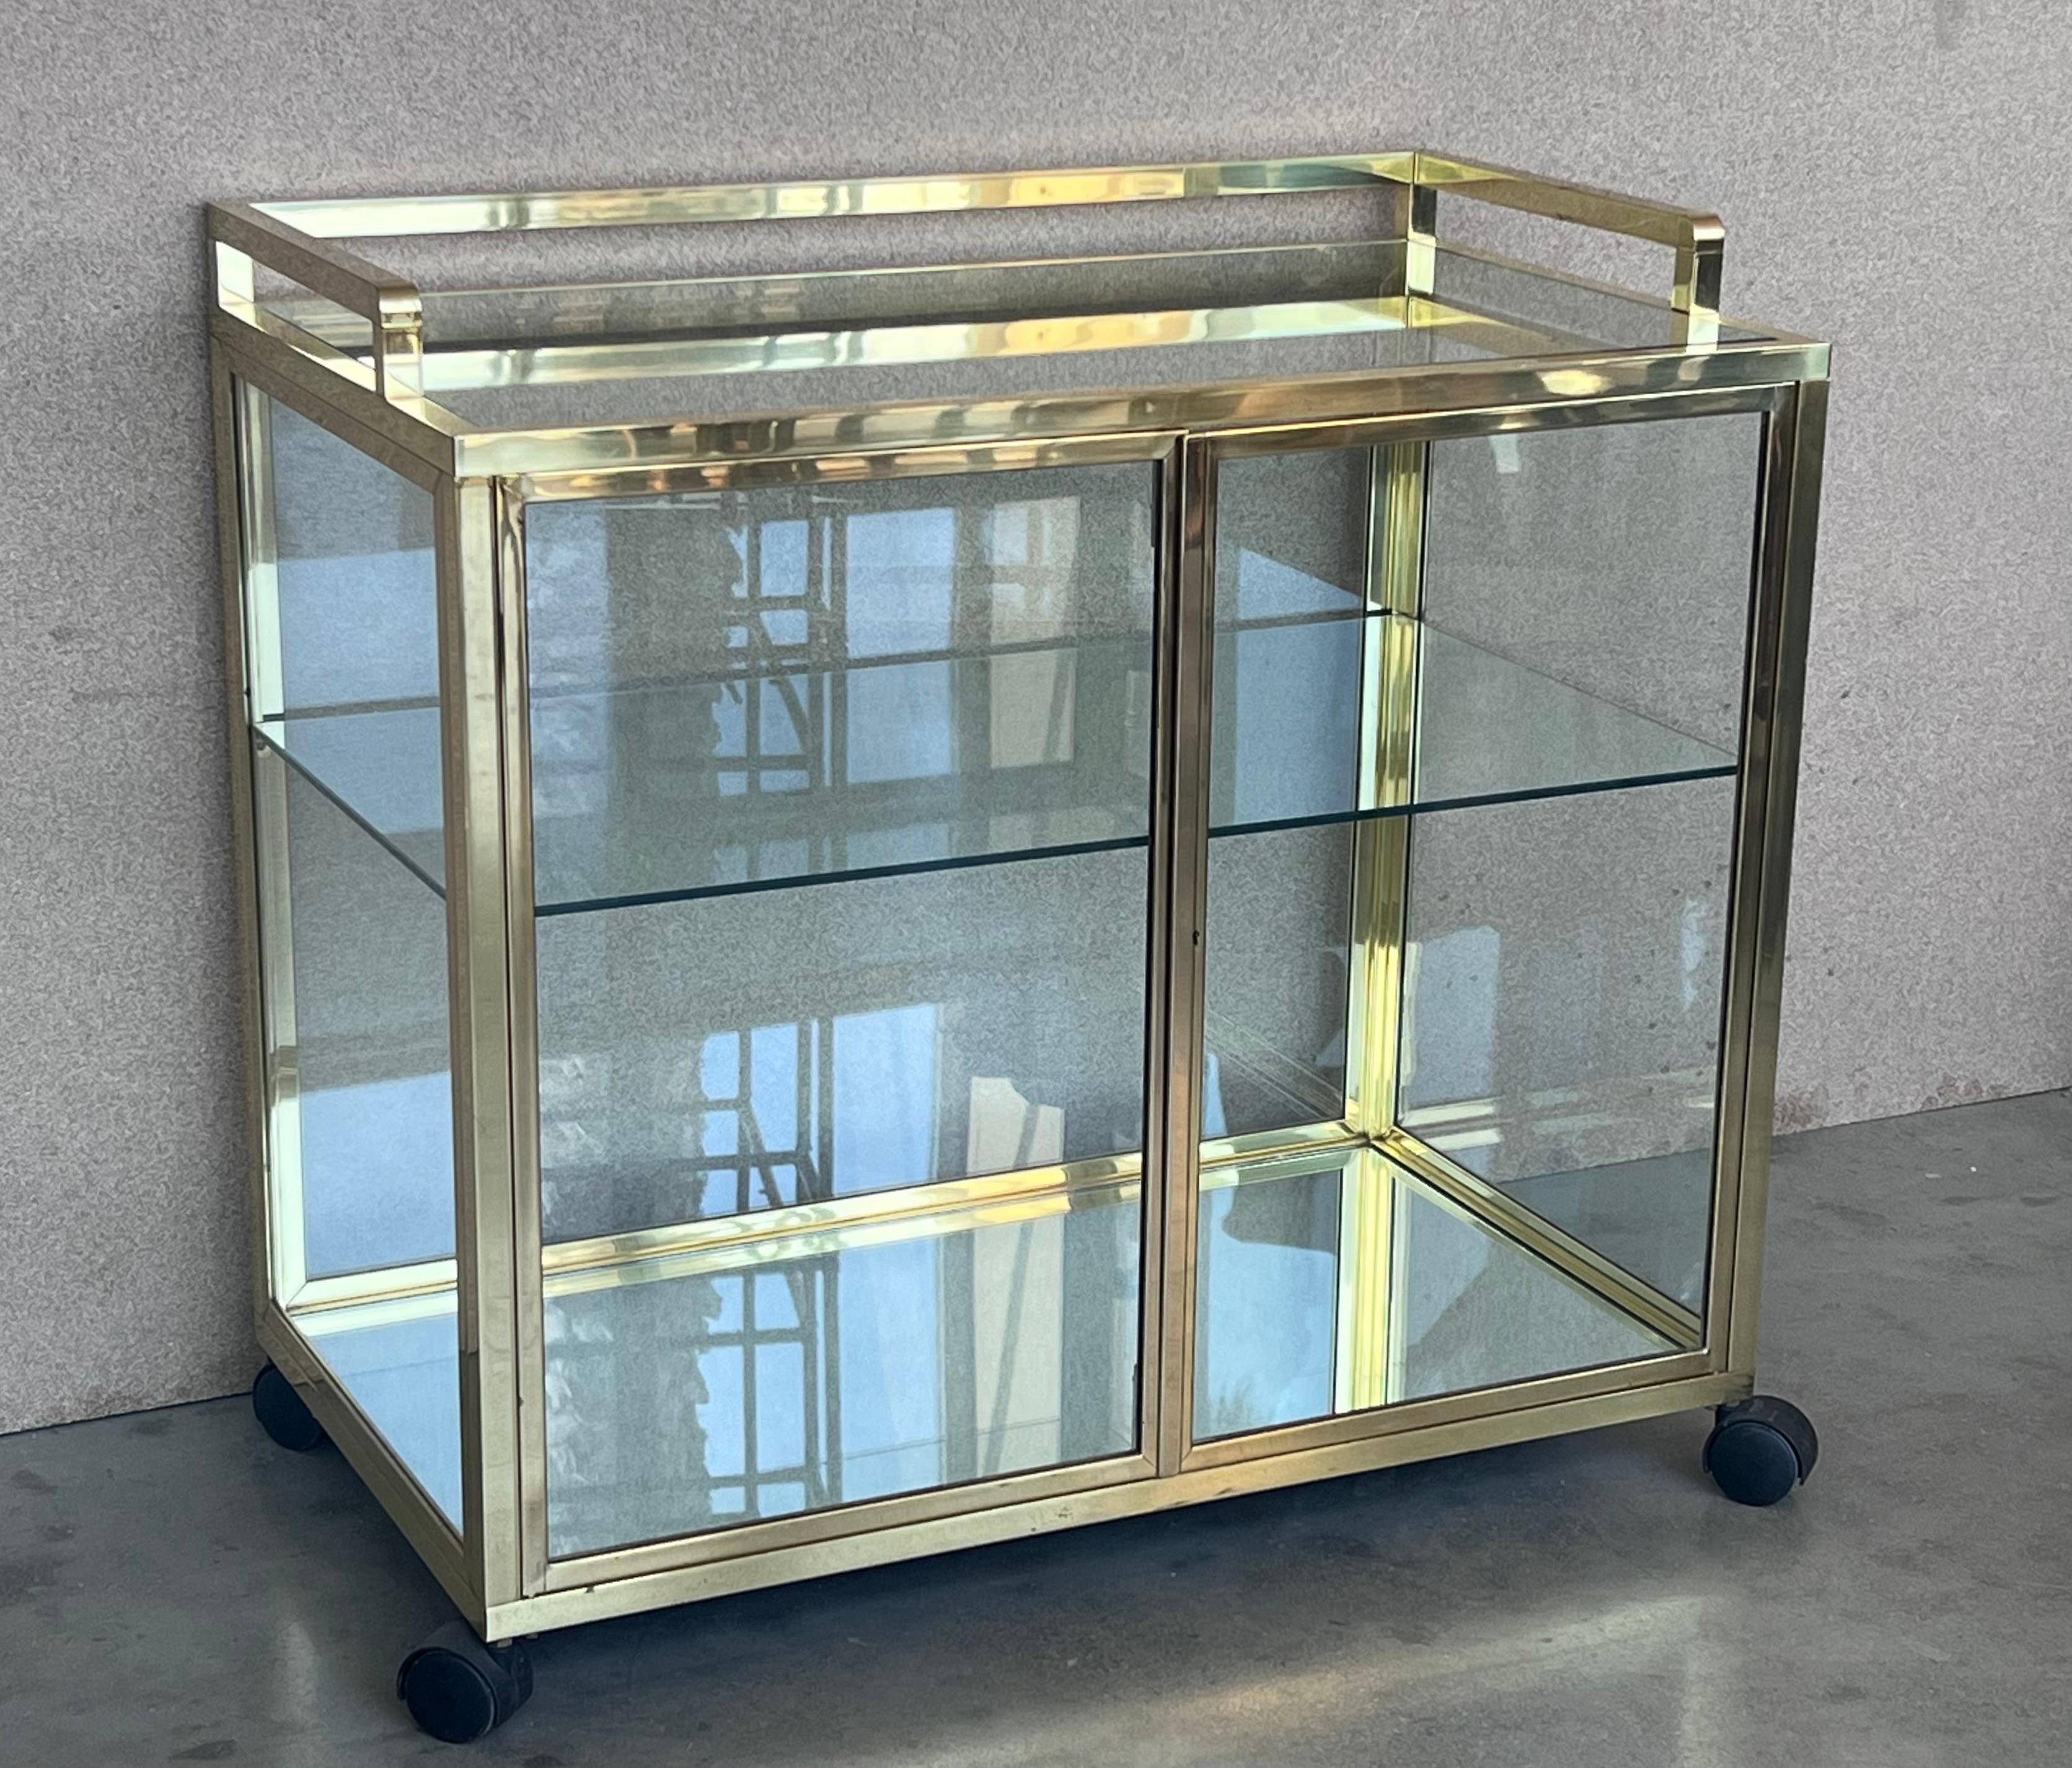 Art Deco Brass and Glass Vitrine Cabinet Bar Cart in style Treitel Gratz 1